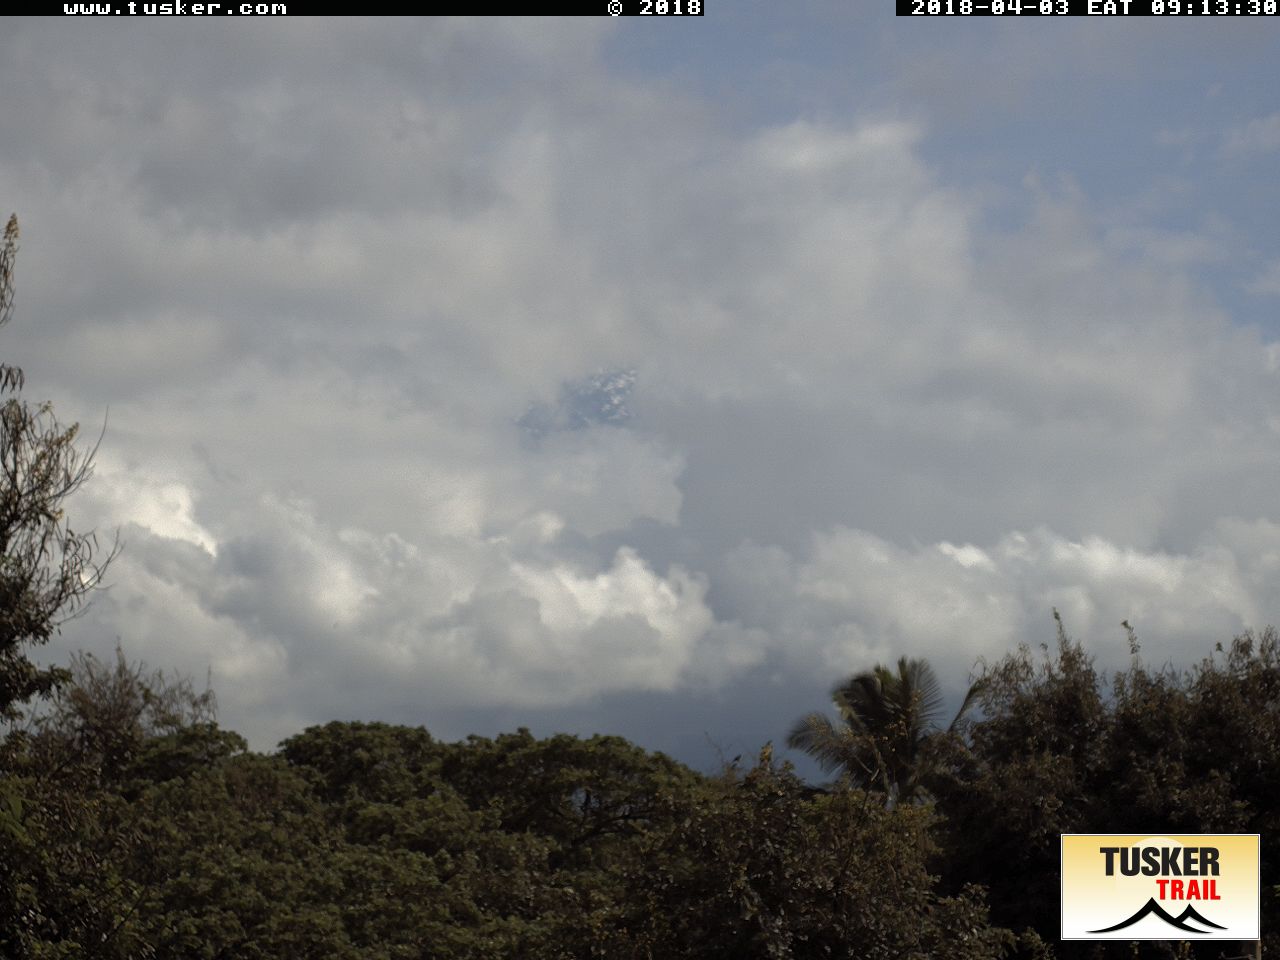 Tuscerpic Webcam : Die Sicht aktuelle auf den Kilimanjaro